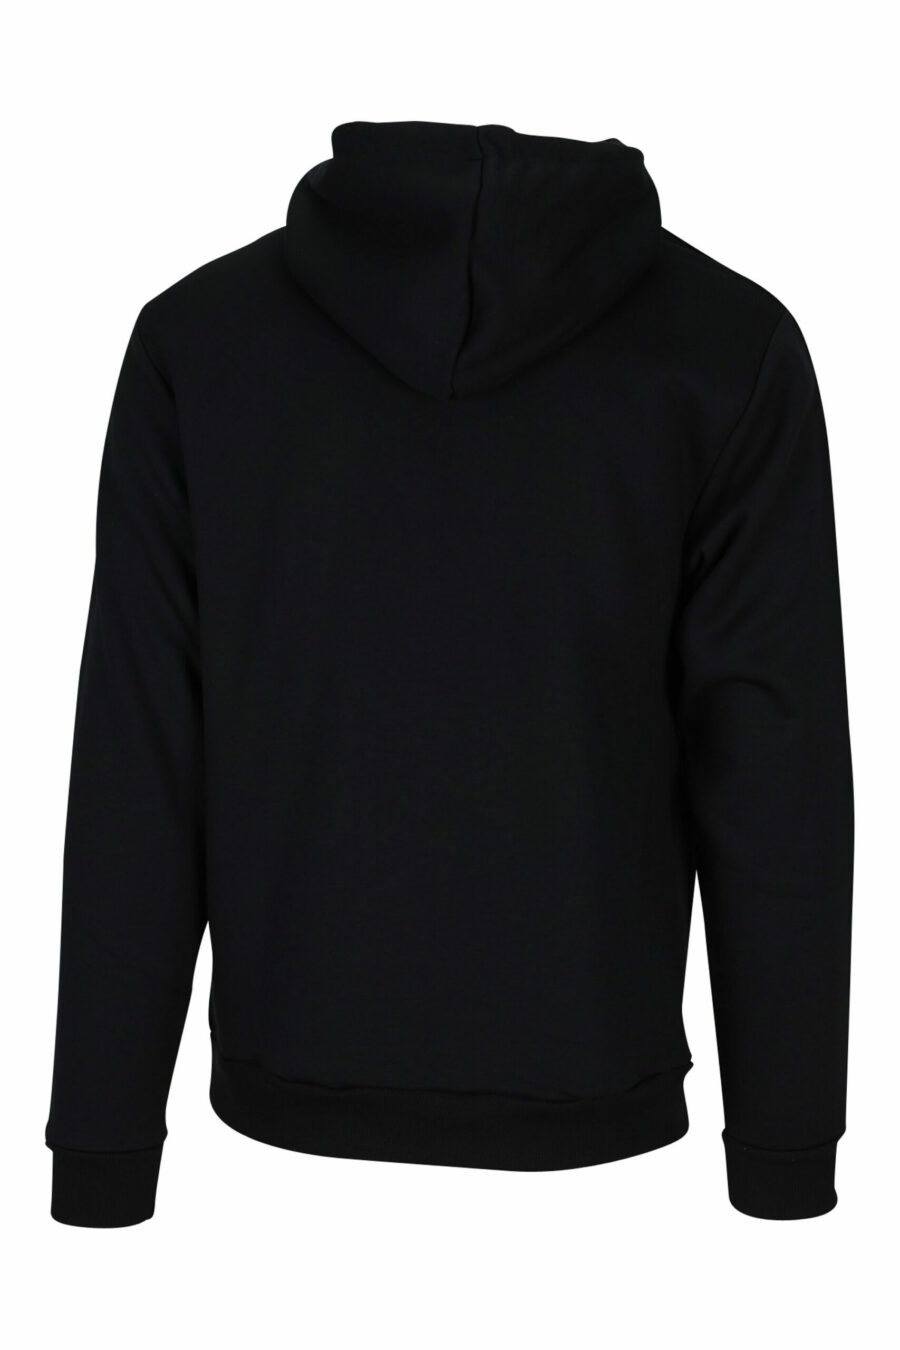 Schwarzes Kapuzensweatshirt mit einfarbigem Logo auf den Seitenbändern - 667113011042 2 skaliert